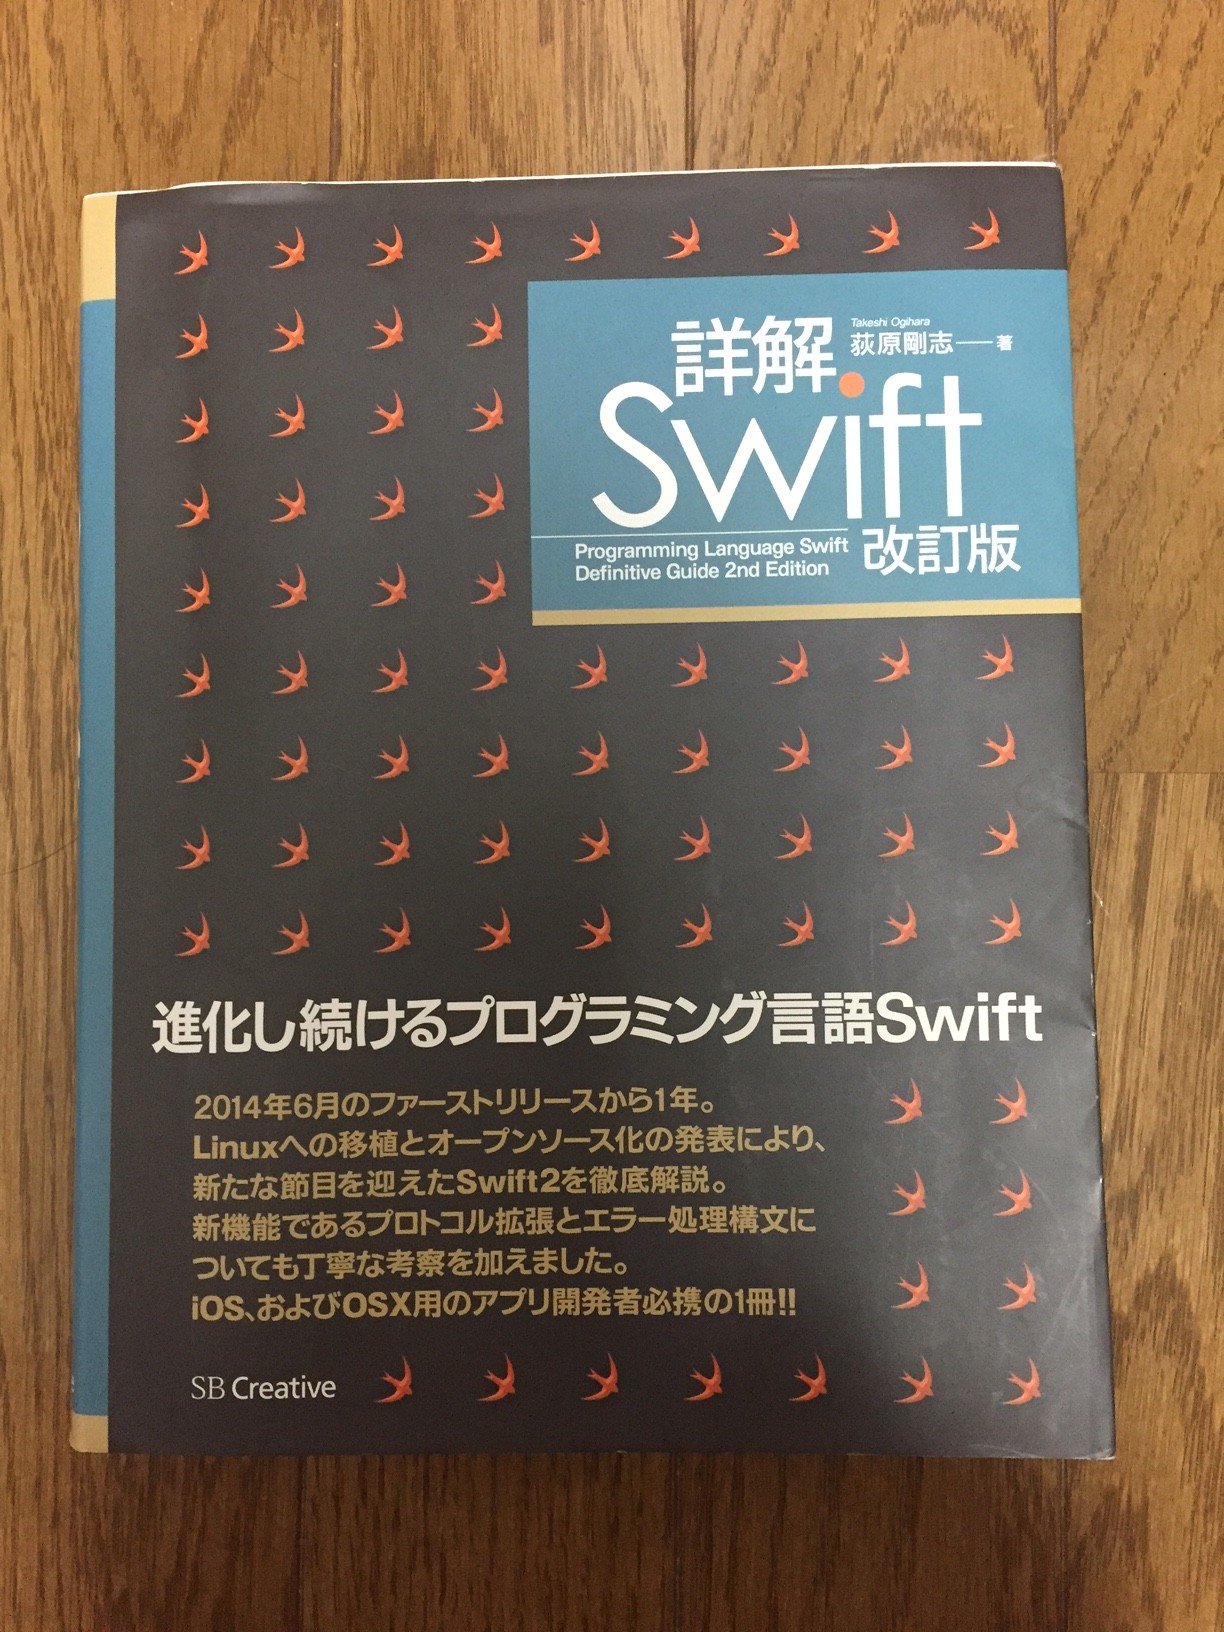 Swiftと言うiPhoneやiPadの開発に使うアップルの新しい言語を触っています。